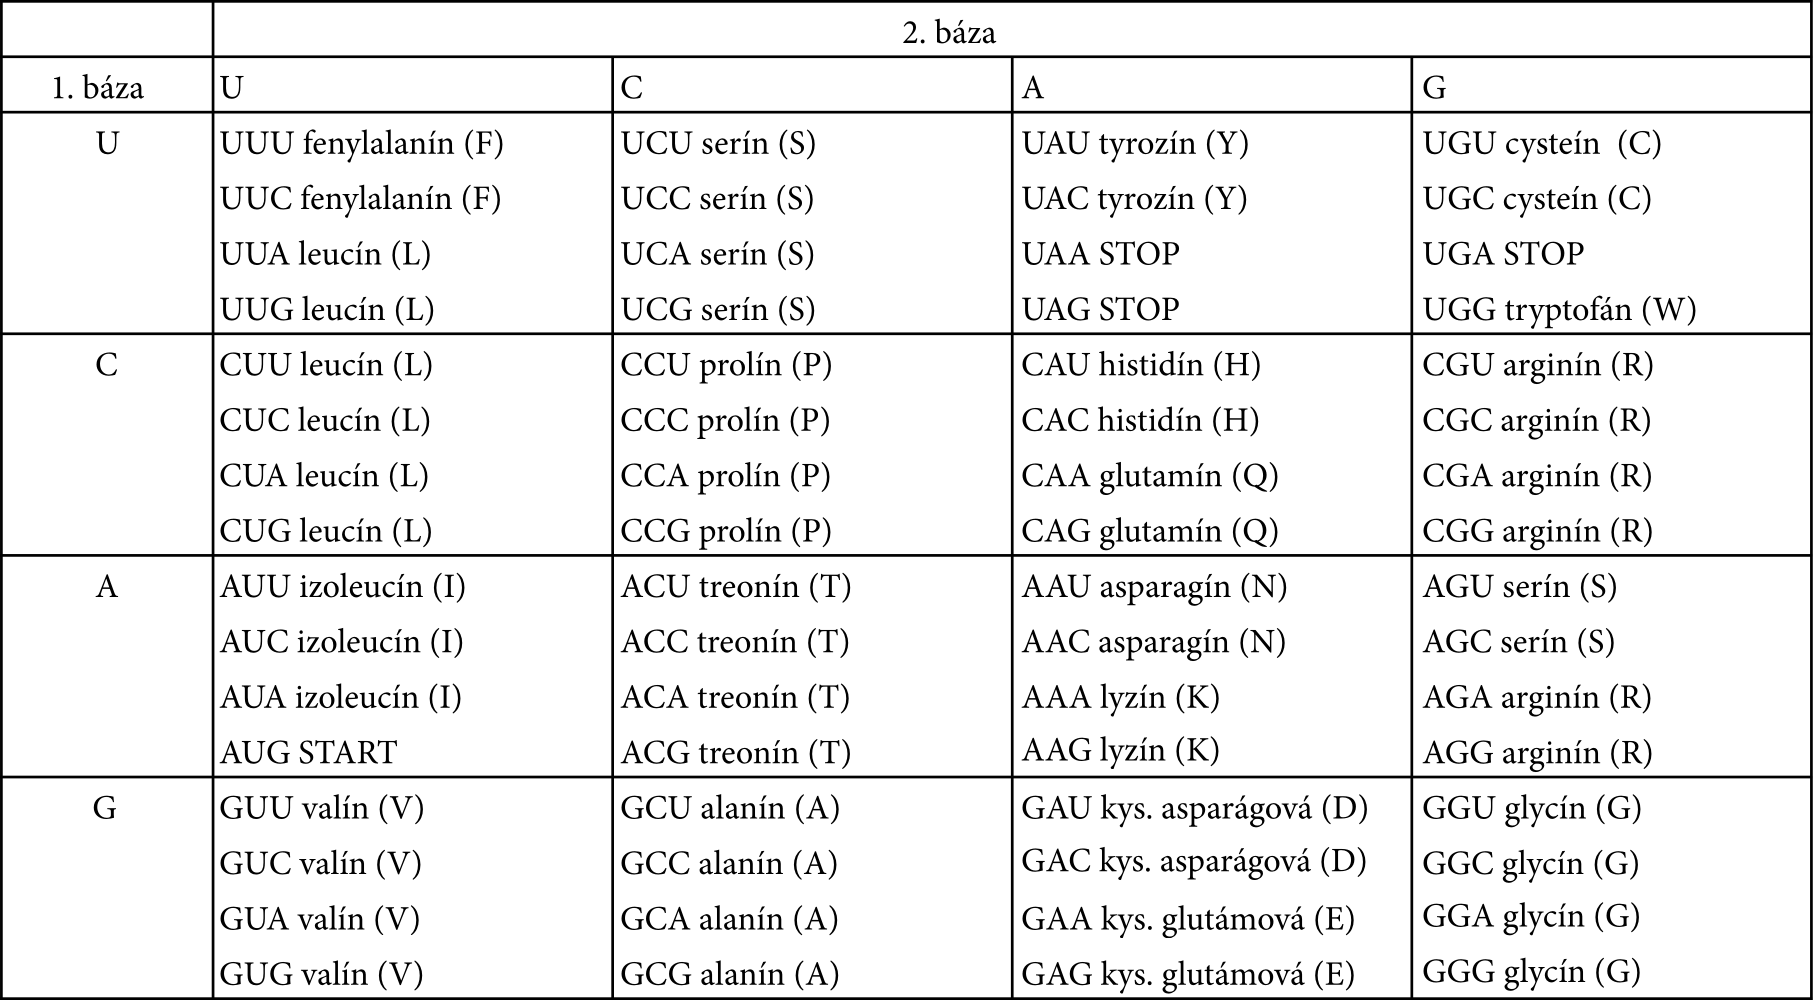 Tabuľka aminokyselín so skratkami prislúchajúcich daným kodónom.